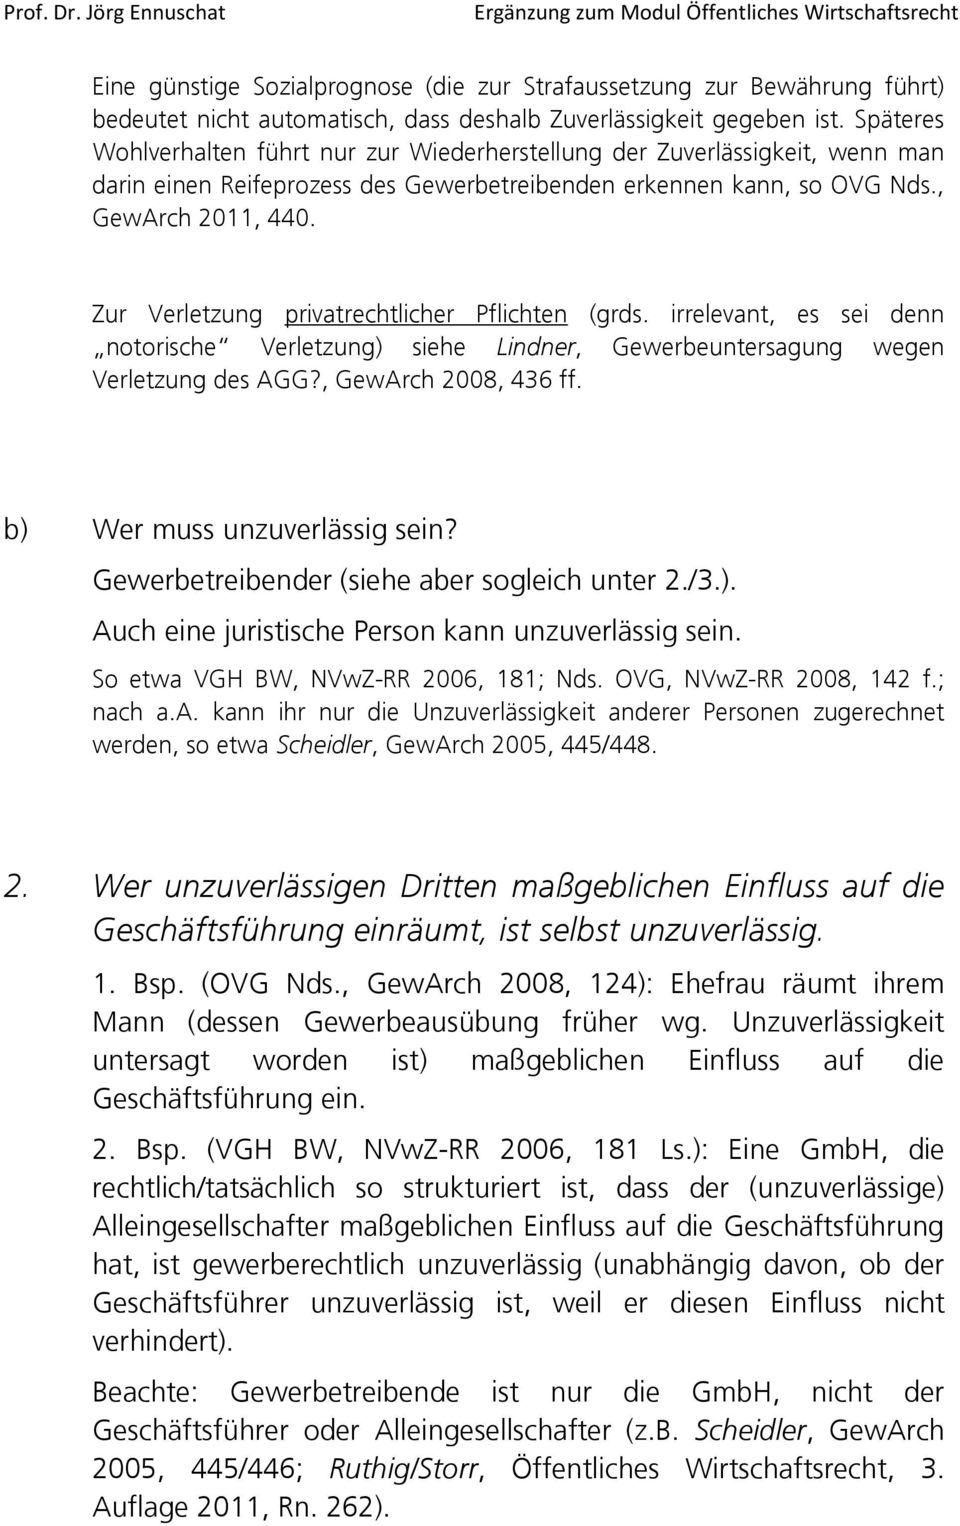 Zur Verletzung privatrechtlicher Pflichten (grds. irrelevant, es sei denn notorische Verletzung) siehe Lindner, Gewerbeuntersagung wegen Verletzung des AGG?, GewArch 2008, 436 ff.